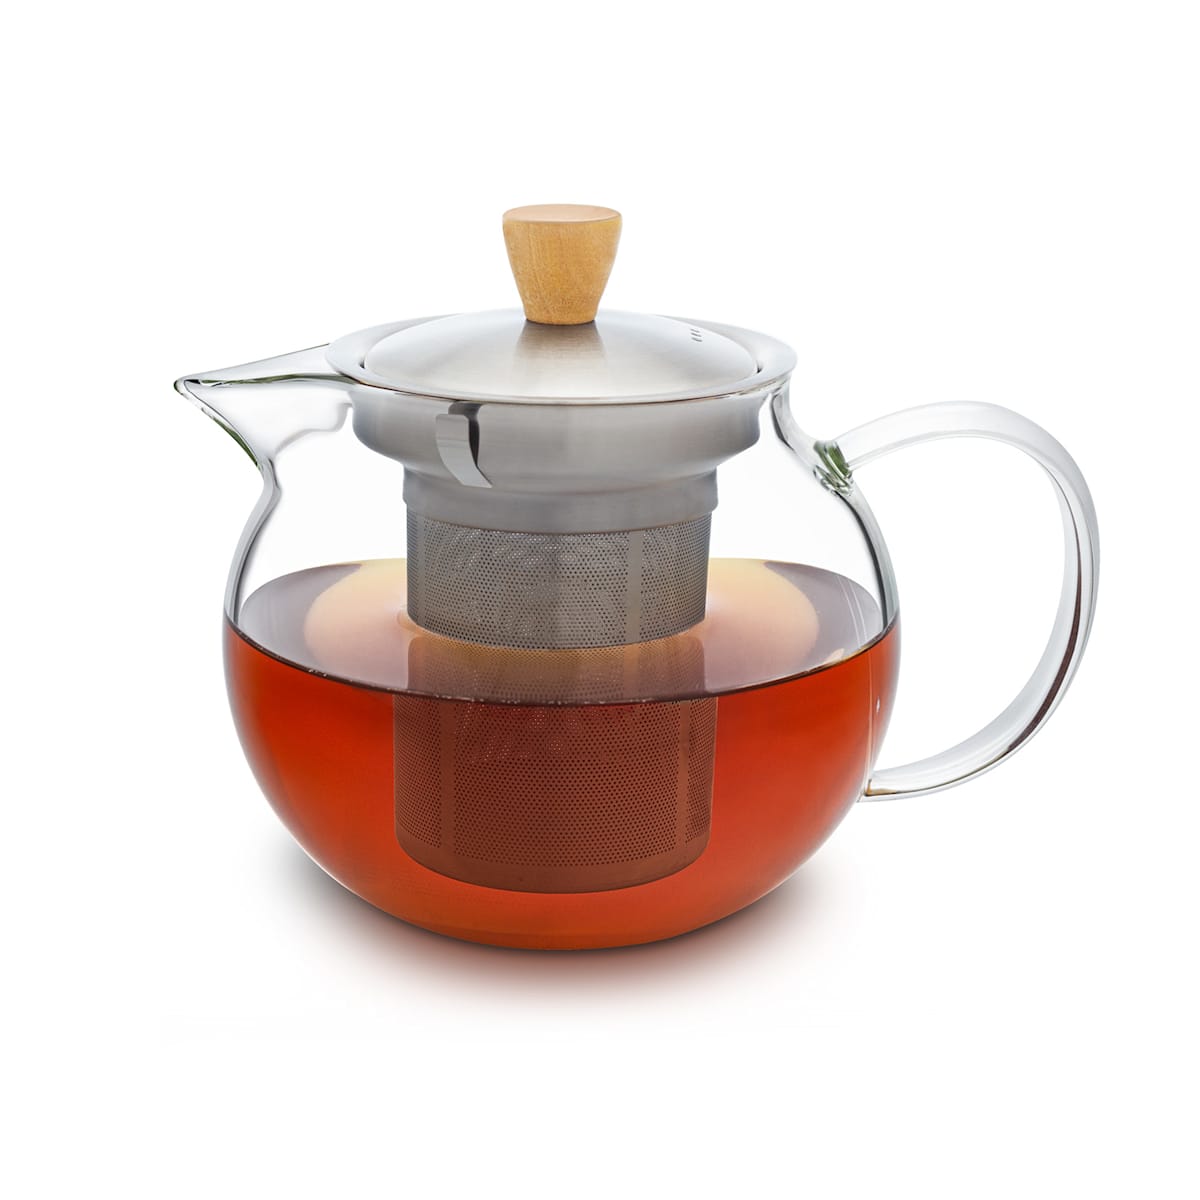 Théière en verre de 450ml, bouilloire à thé avec infuseur amovible